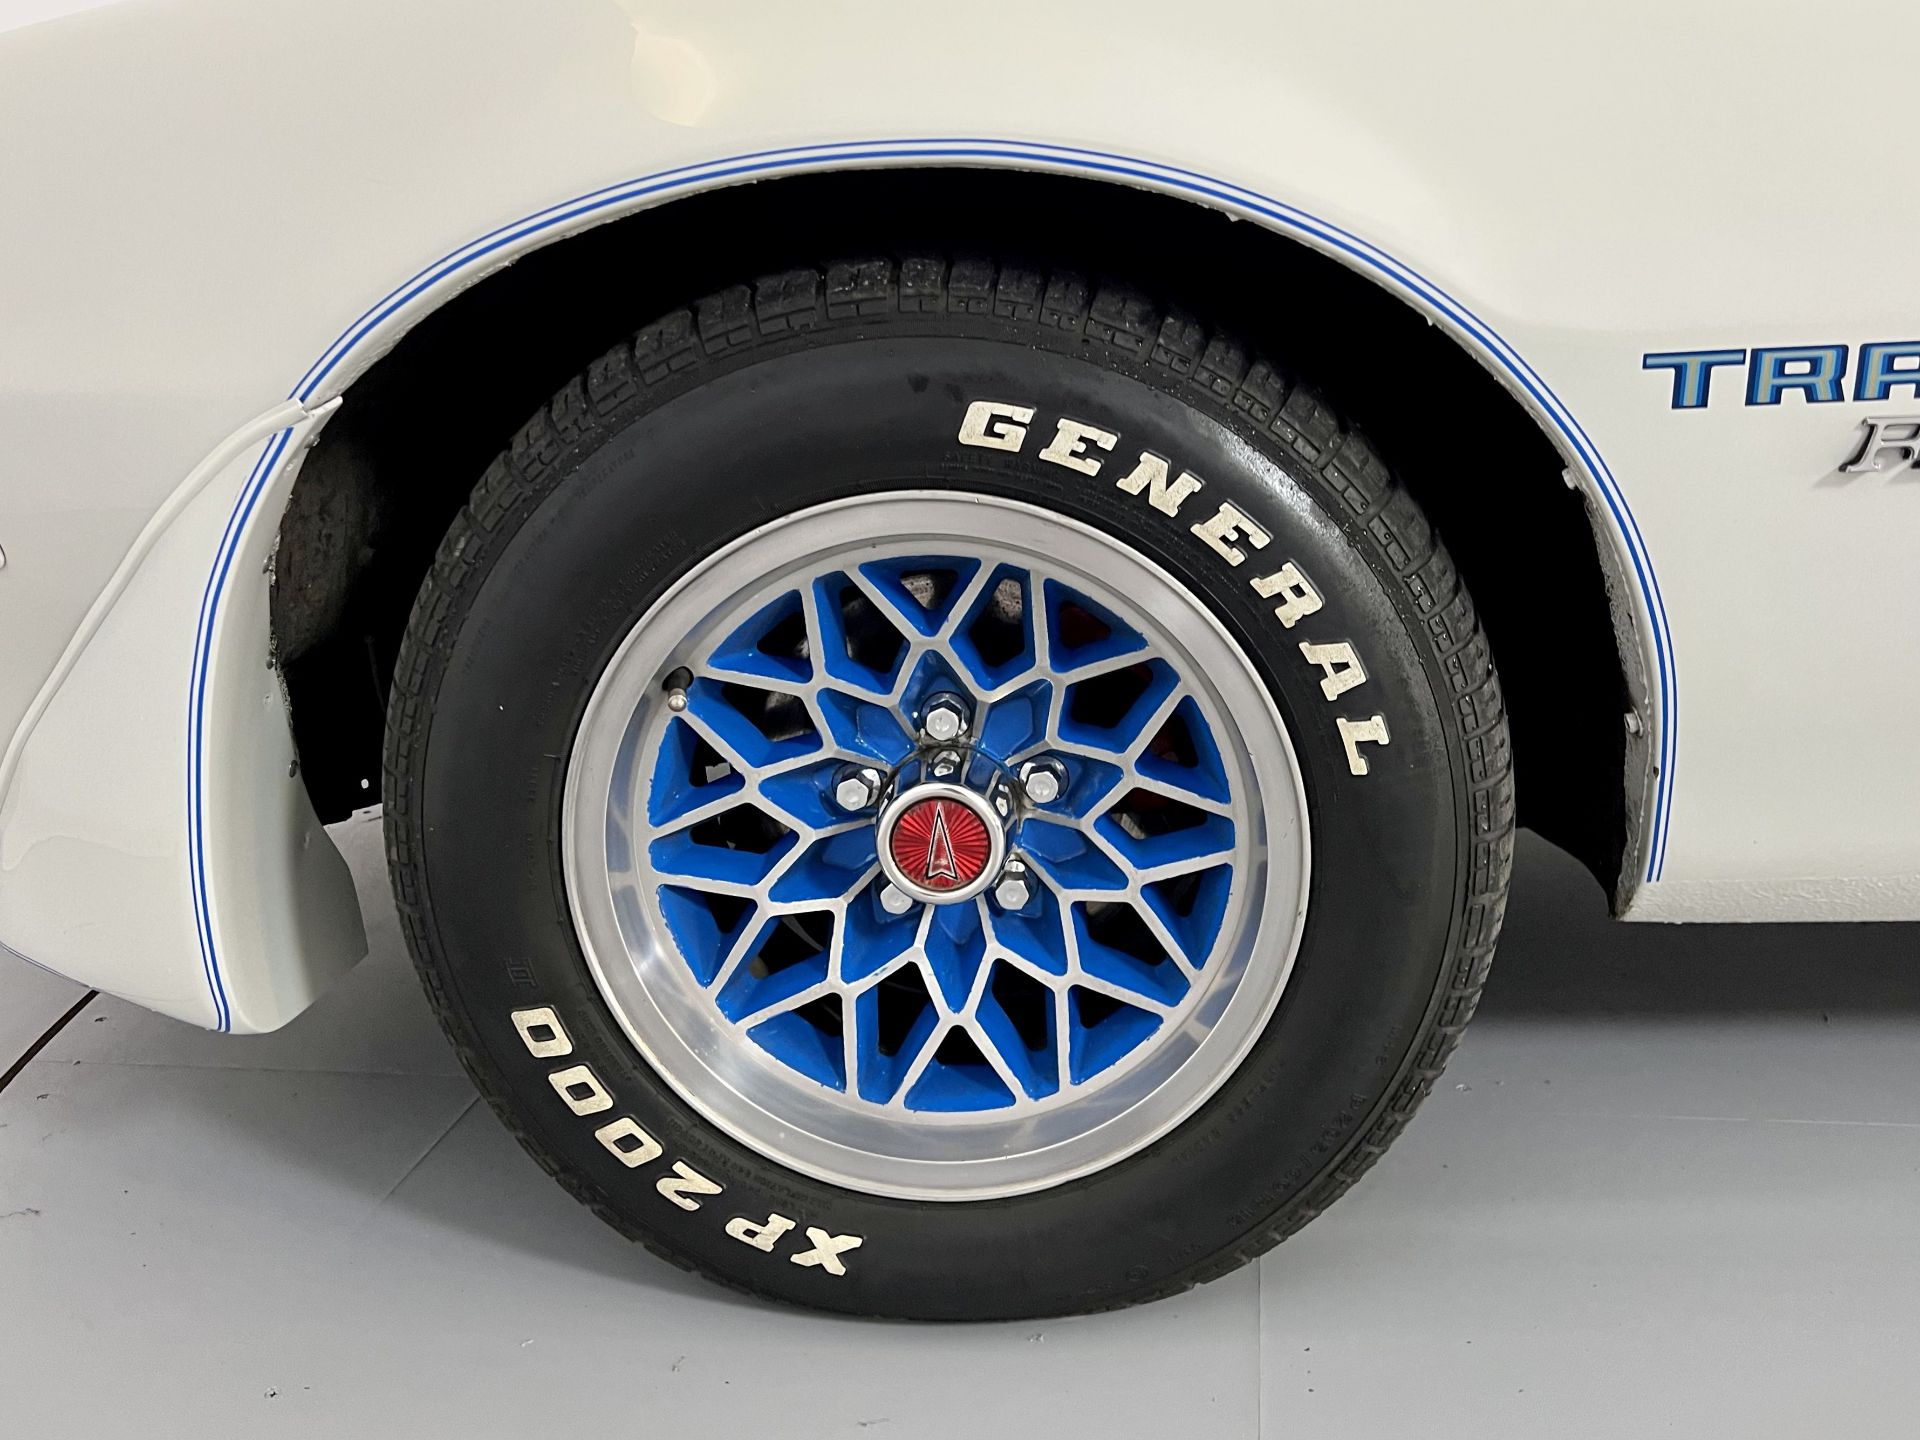 Pontiac Firebird - Trans Am Tribute - Image 18 of 31